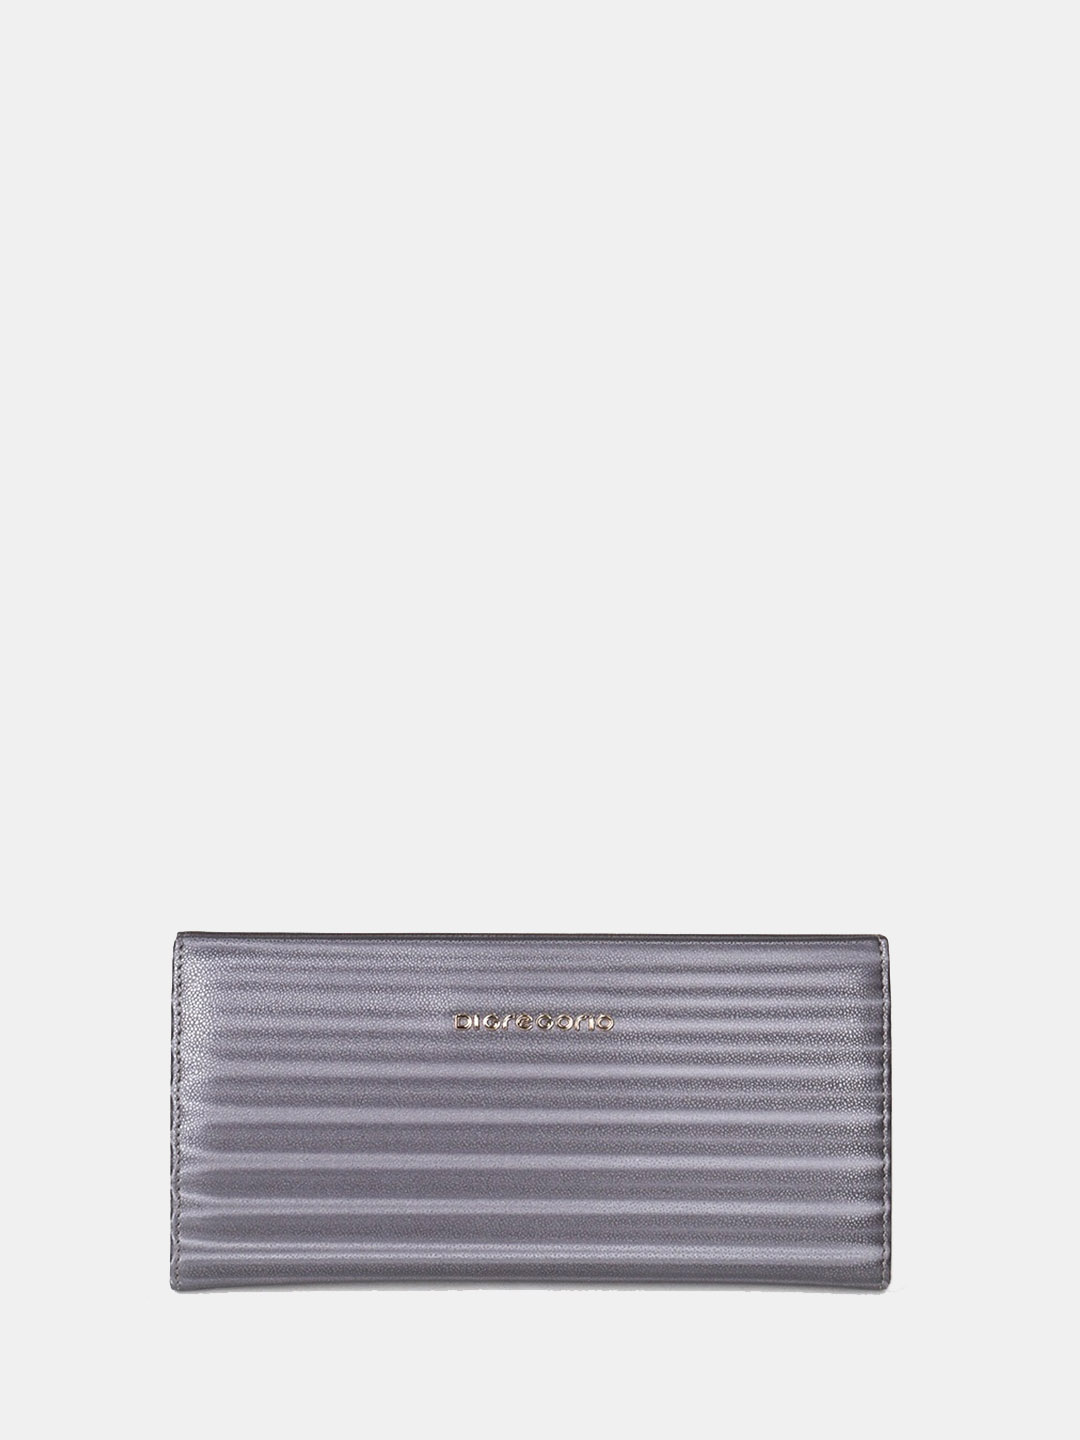 Фото Женский кошелек из мягкой кожи с тиснением под ската на золотистой клипсе Кошельки